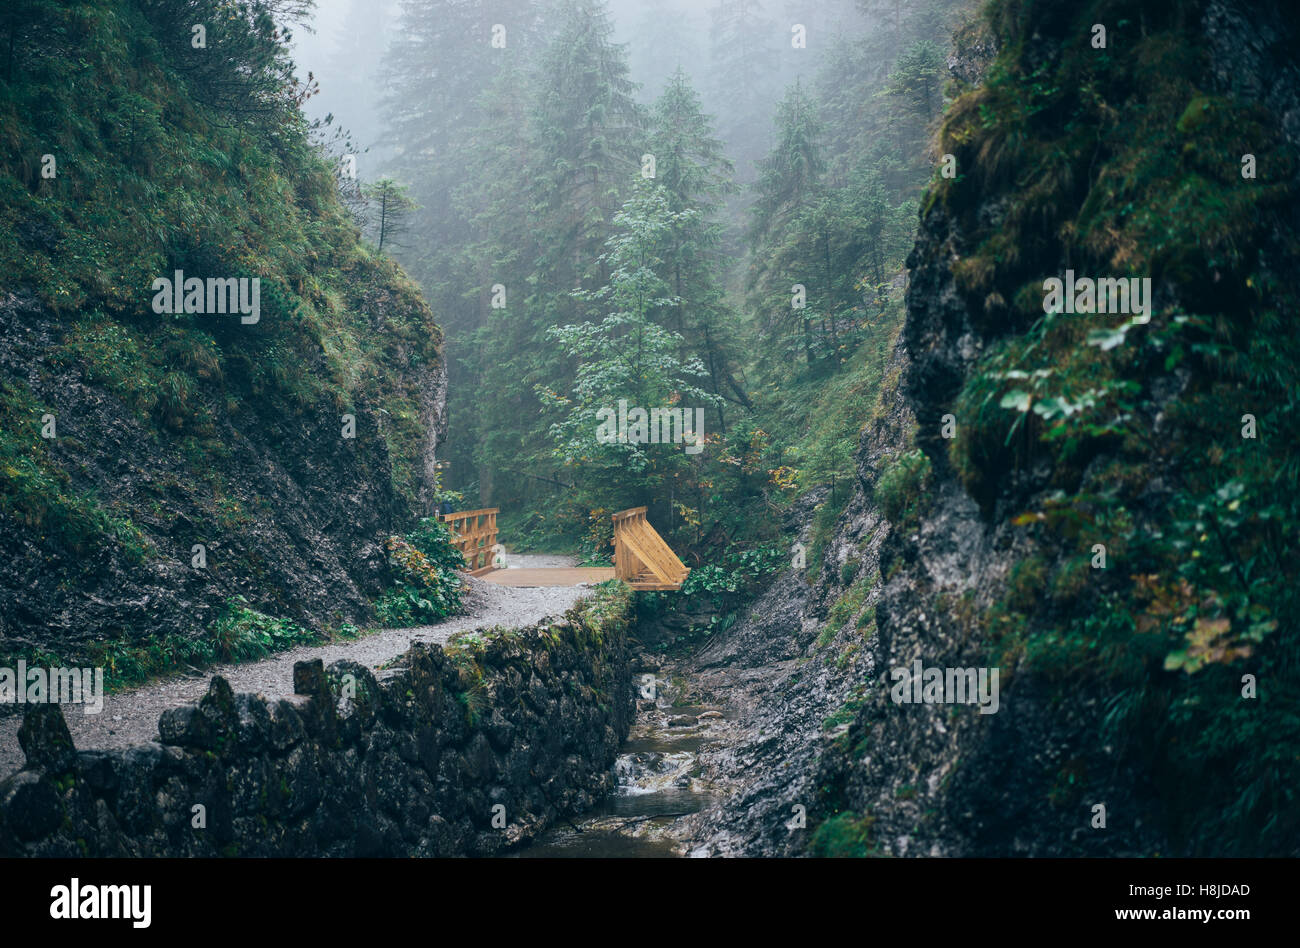 Misty mountain forest. Bialego Valley, Western Tatra Mountains, Poland Stock Photo